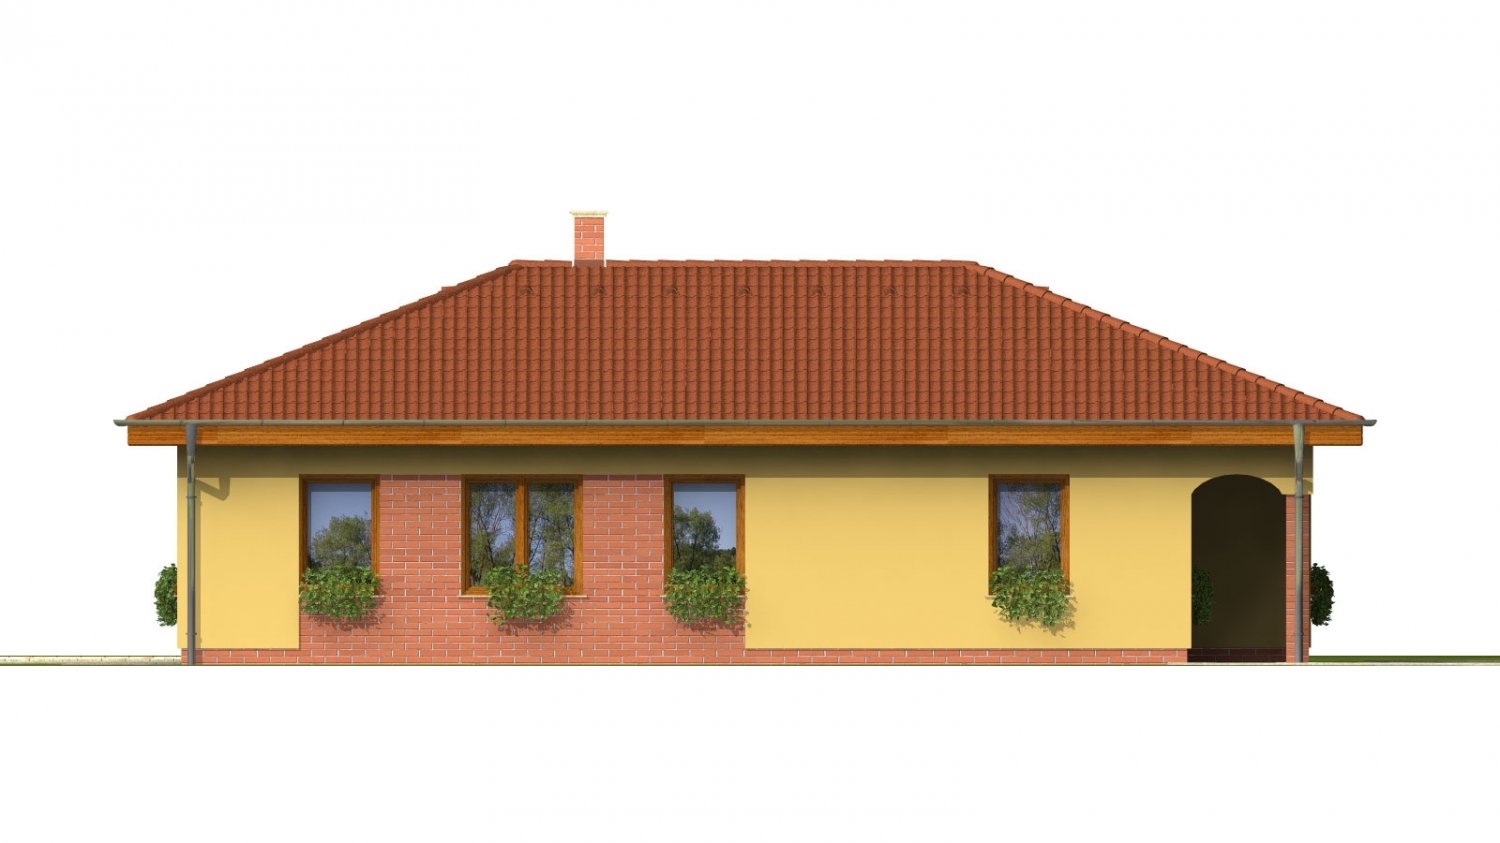 Zrkadlový pohľad 2. - Projekt domu na úzký pozemek s valbovou střechou a terasou.